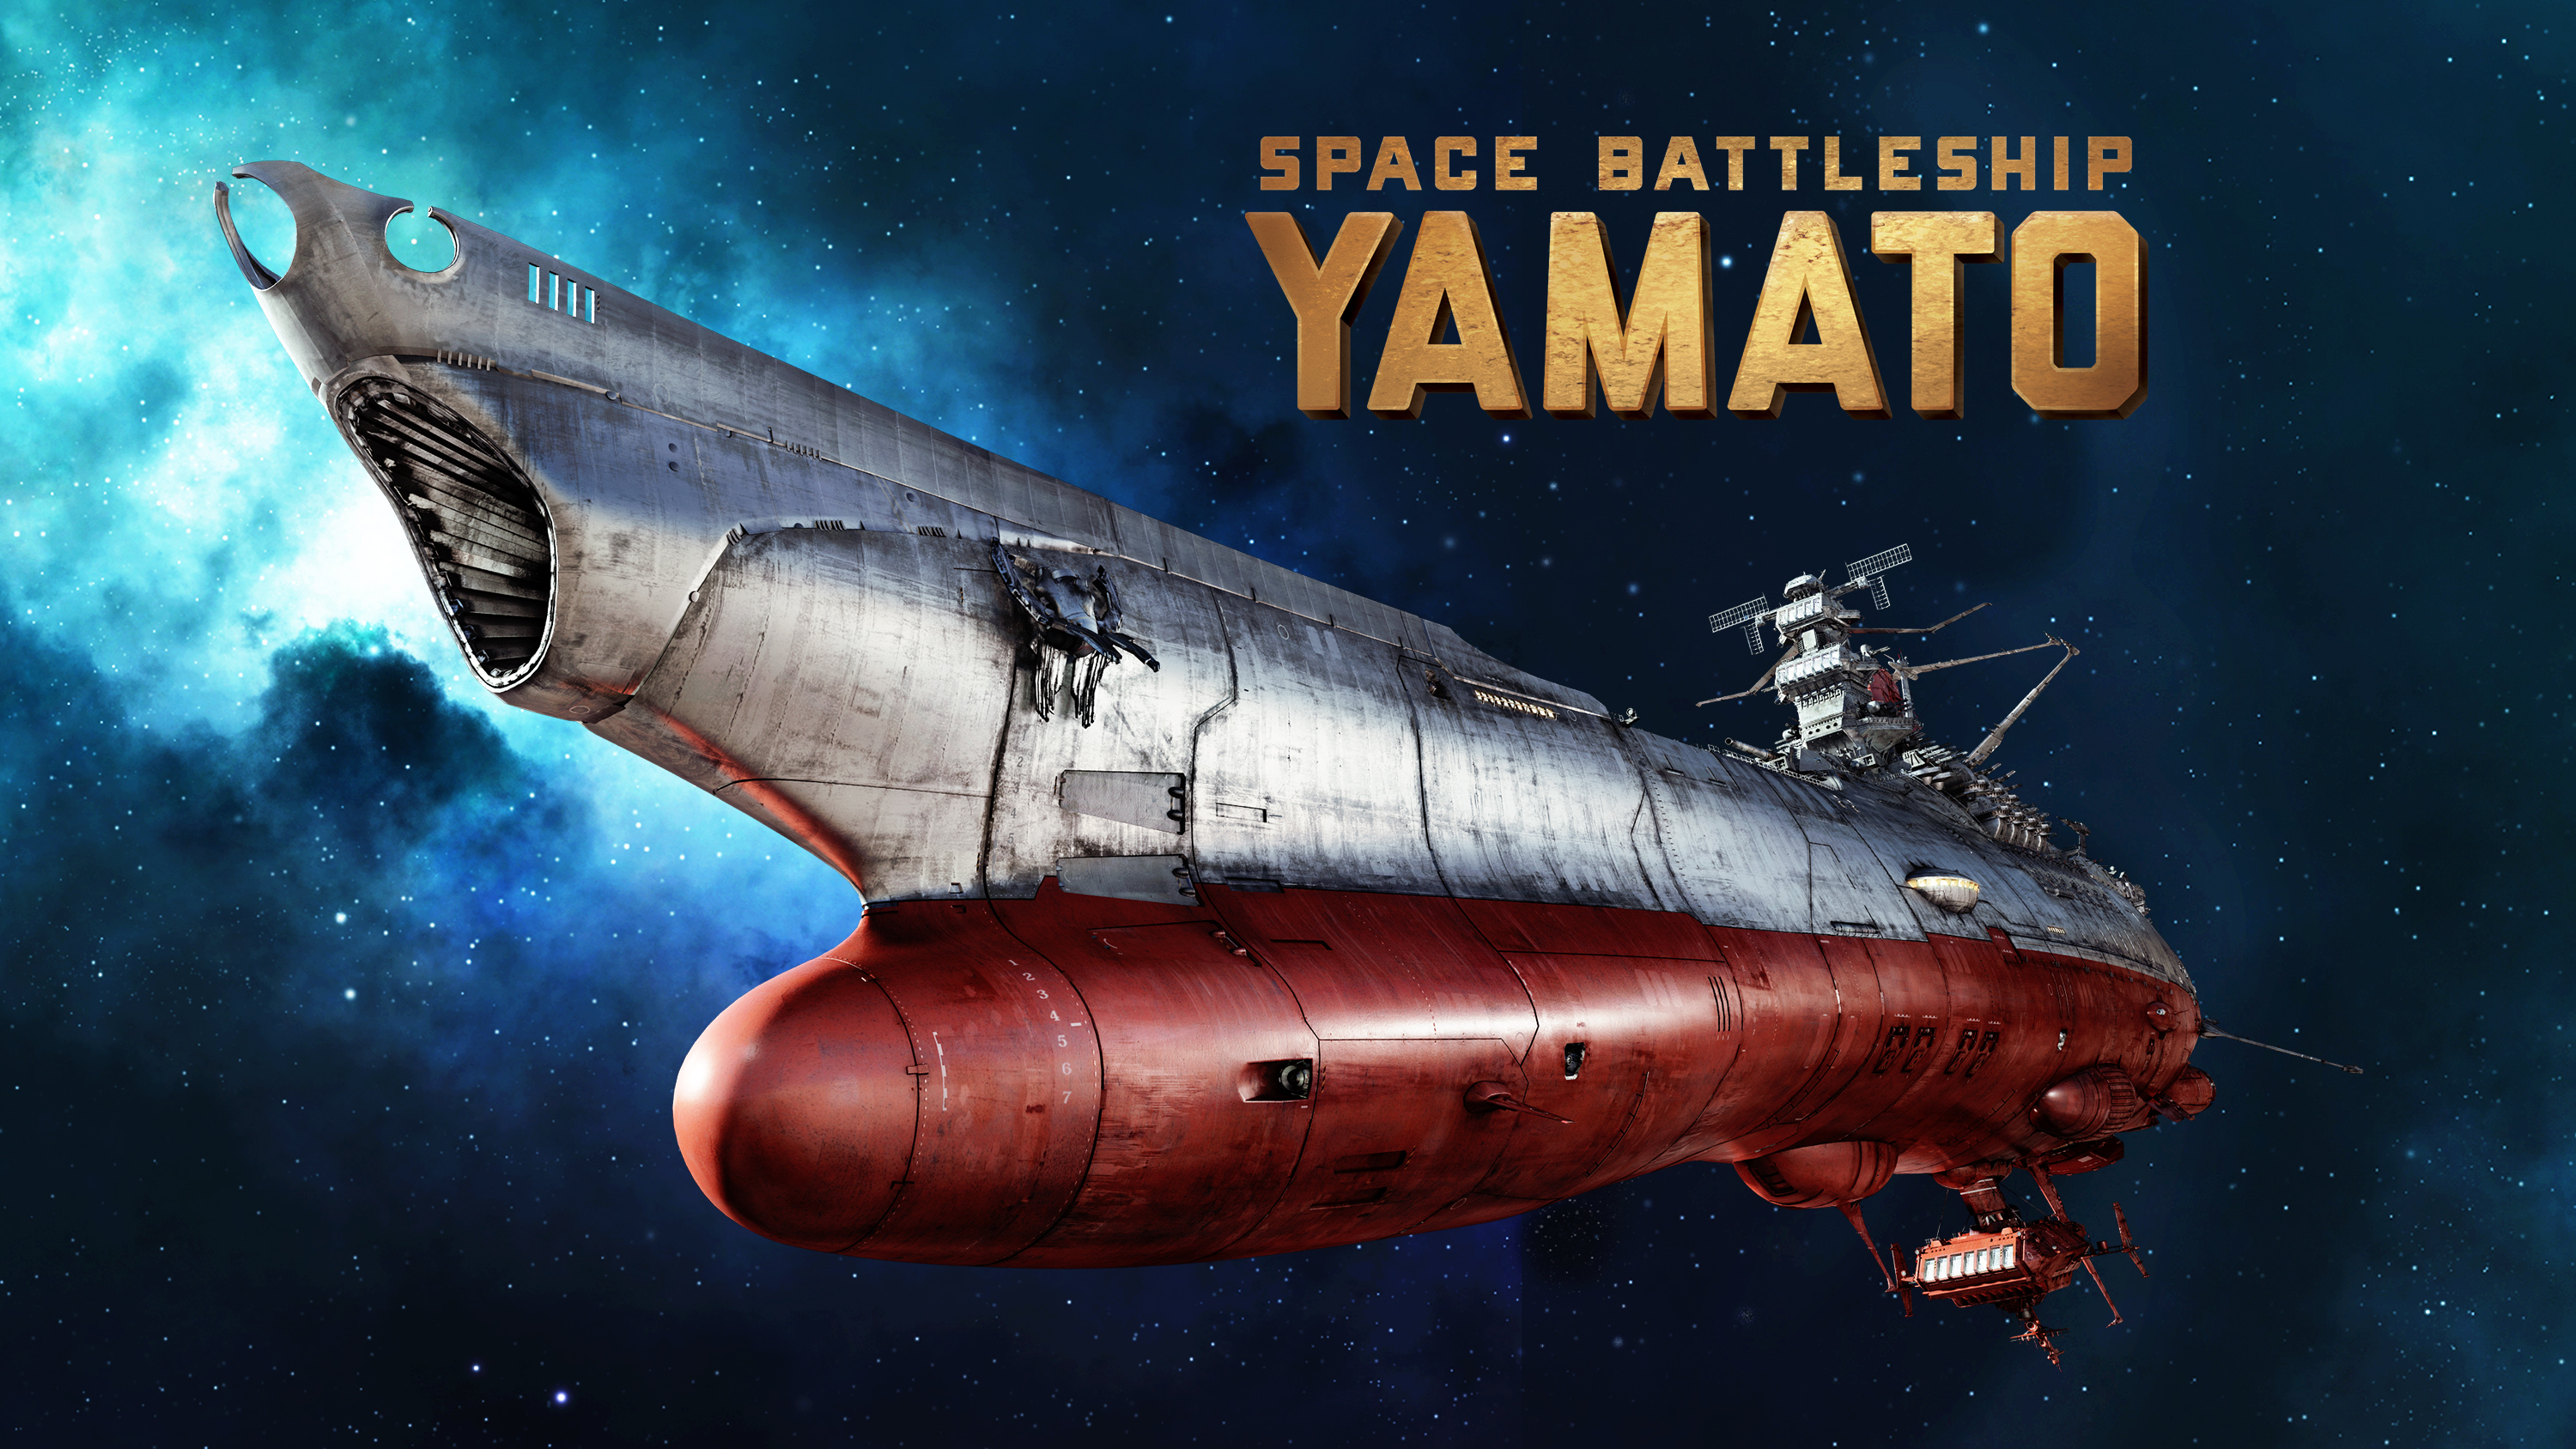 Space Battleship Yamato [Blu-Ray] [Import] | thereasontohope.or.ke